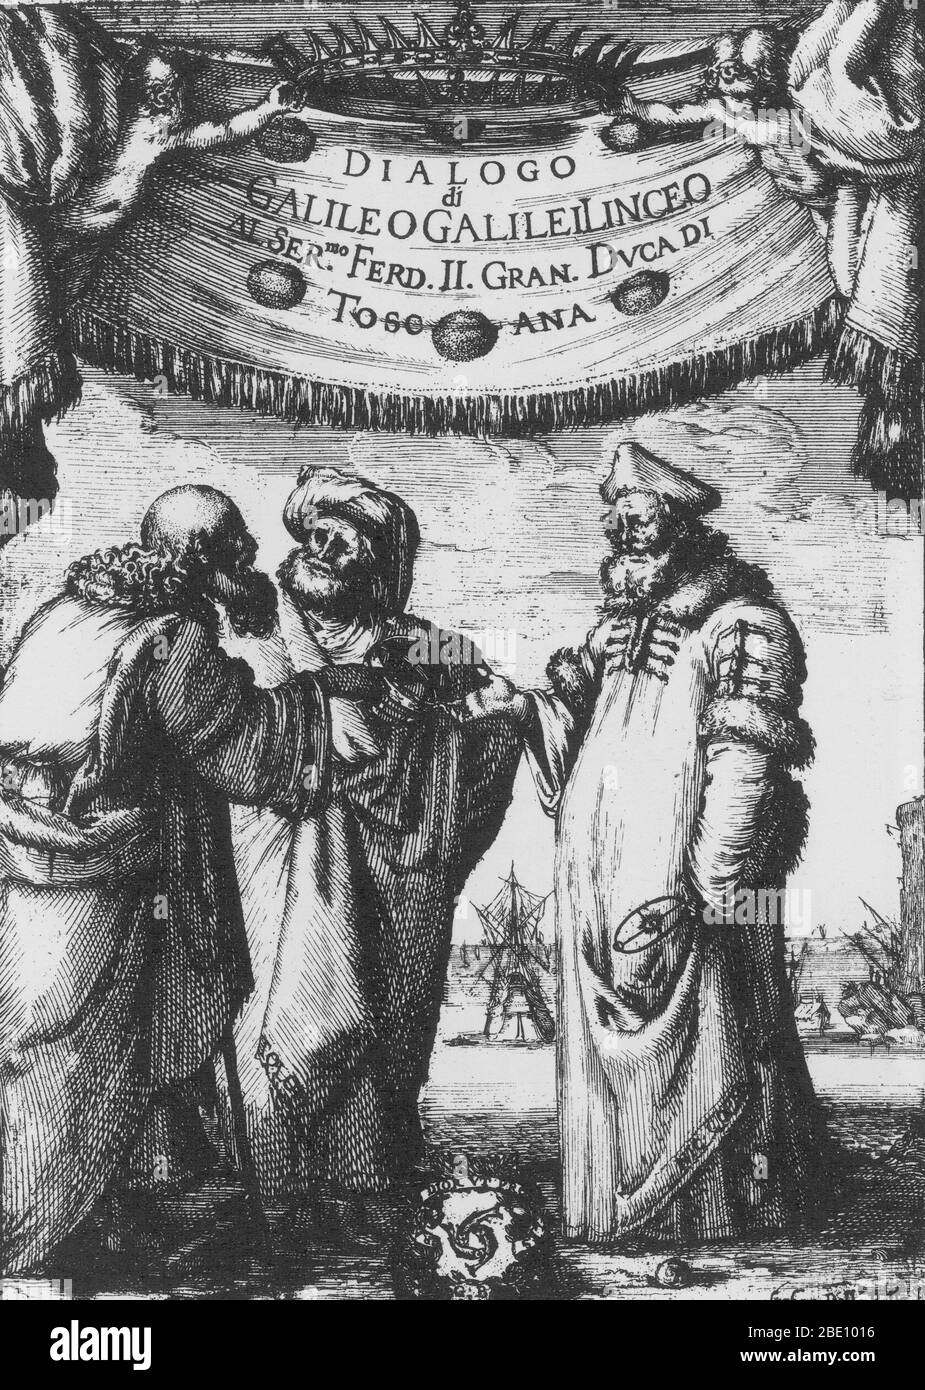 Aristoteles, Ptolemäus und Kopernikus. Frontispiz geätzt von Sefano della Bella aus Galileo Galileis Dialogo...sopra i due massimi sistemi del mondo (Dialog über die beiden Hauptweltsysteme), veröffentlicht in Florenz von Giovannie Batista Landini, 1632. Aristoteles (384 v. Chr. - 322 v. Chr.) war ein griechischer Philosoph, der als Begründer der Logik bekannt war. Er hatte eine geozentrische Sicht auf den Himmel, der aus 55 konzentrischen und kristallinen Sphären bestand. Ptolemäus (c. 85 - 165 n. Chr.) war ein ägyptischer Astronom, der das Ptolematische System, das hielt, dass die Erde im Zentrum des Universums, mit dem p Stockfoto